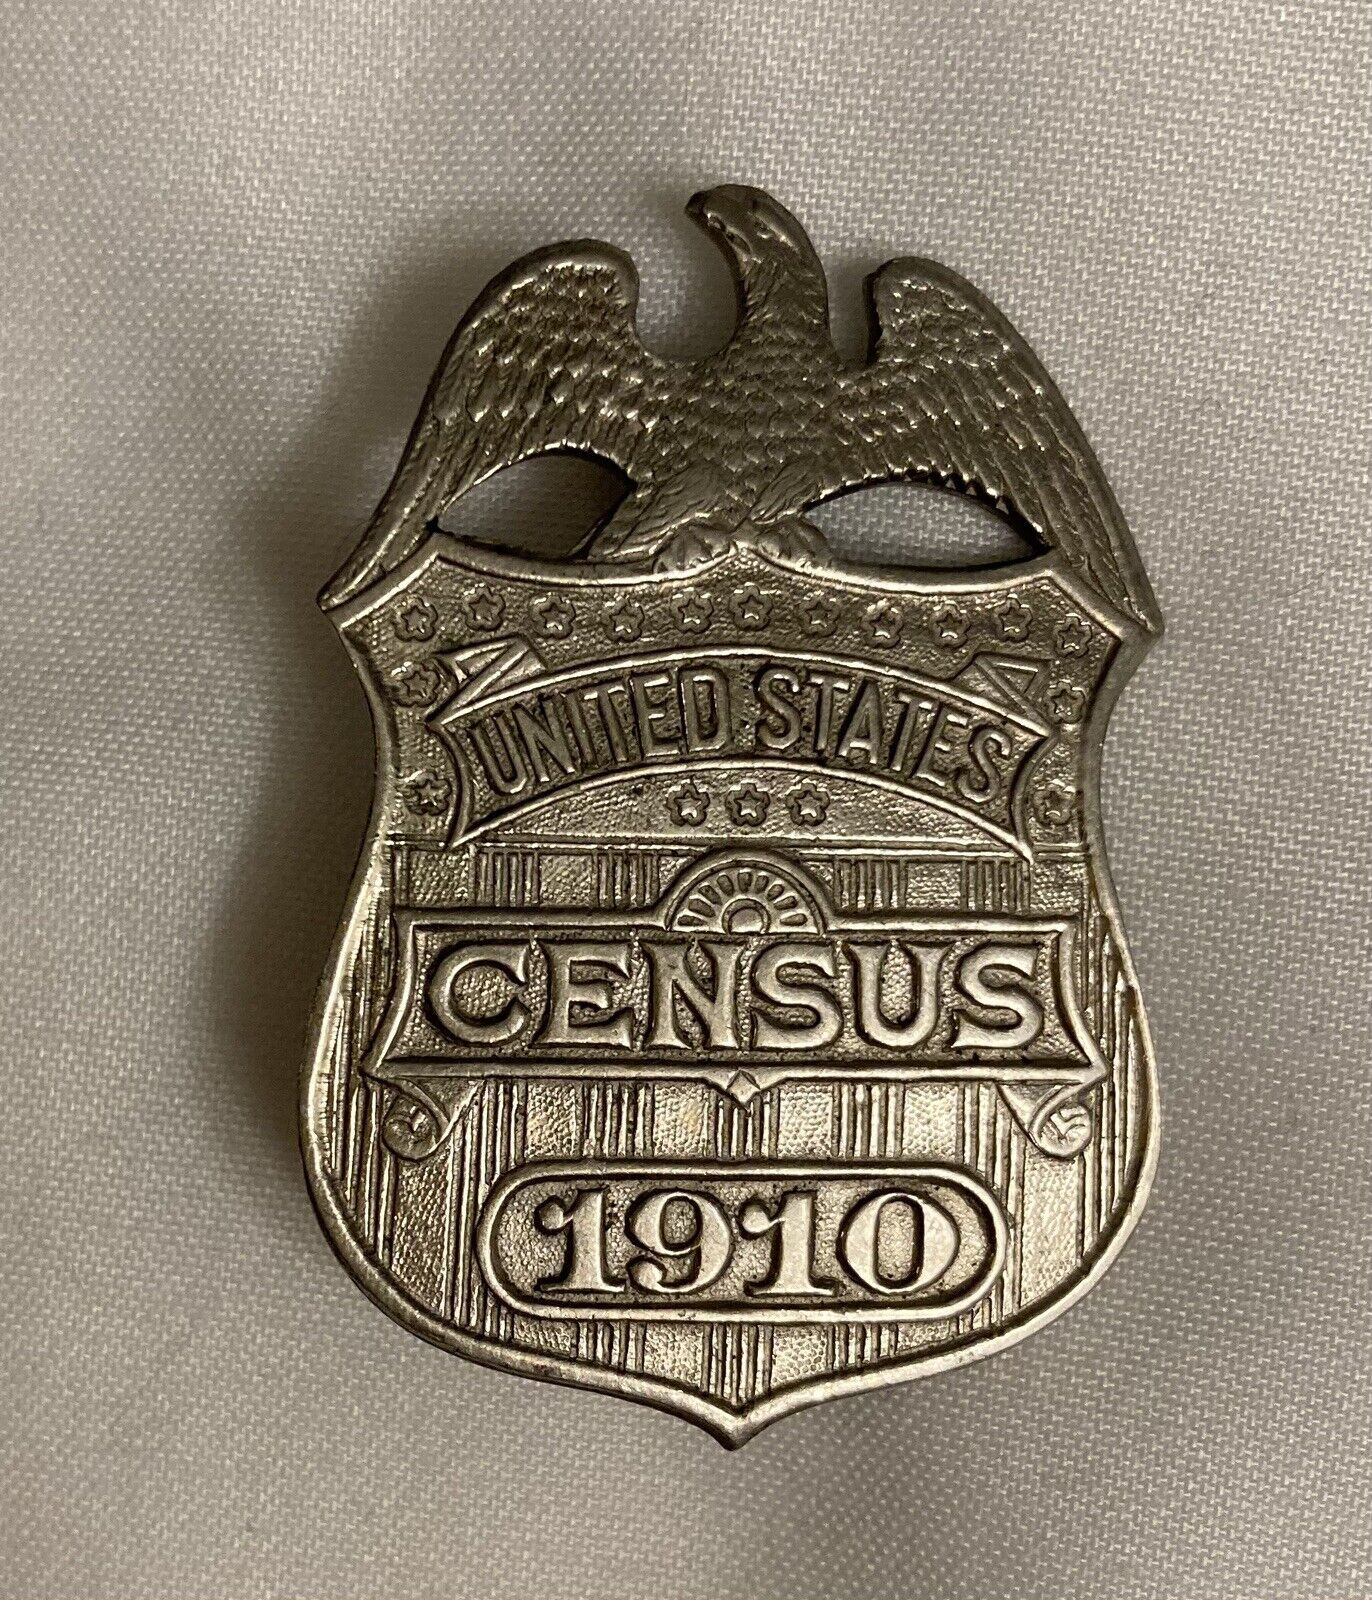 Antique 1910 United States Census Enumerator Badge Vintage Obsolete